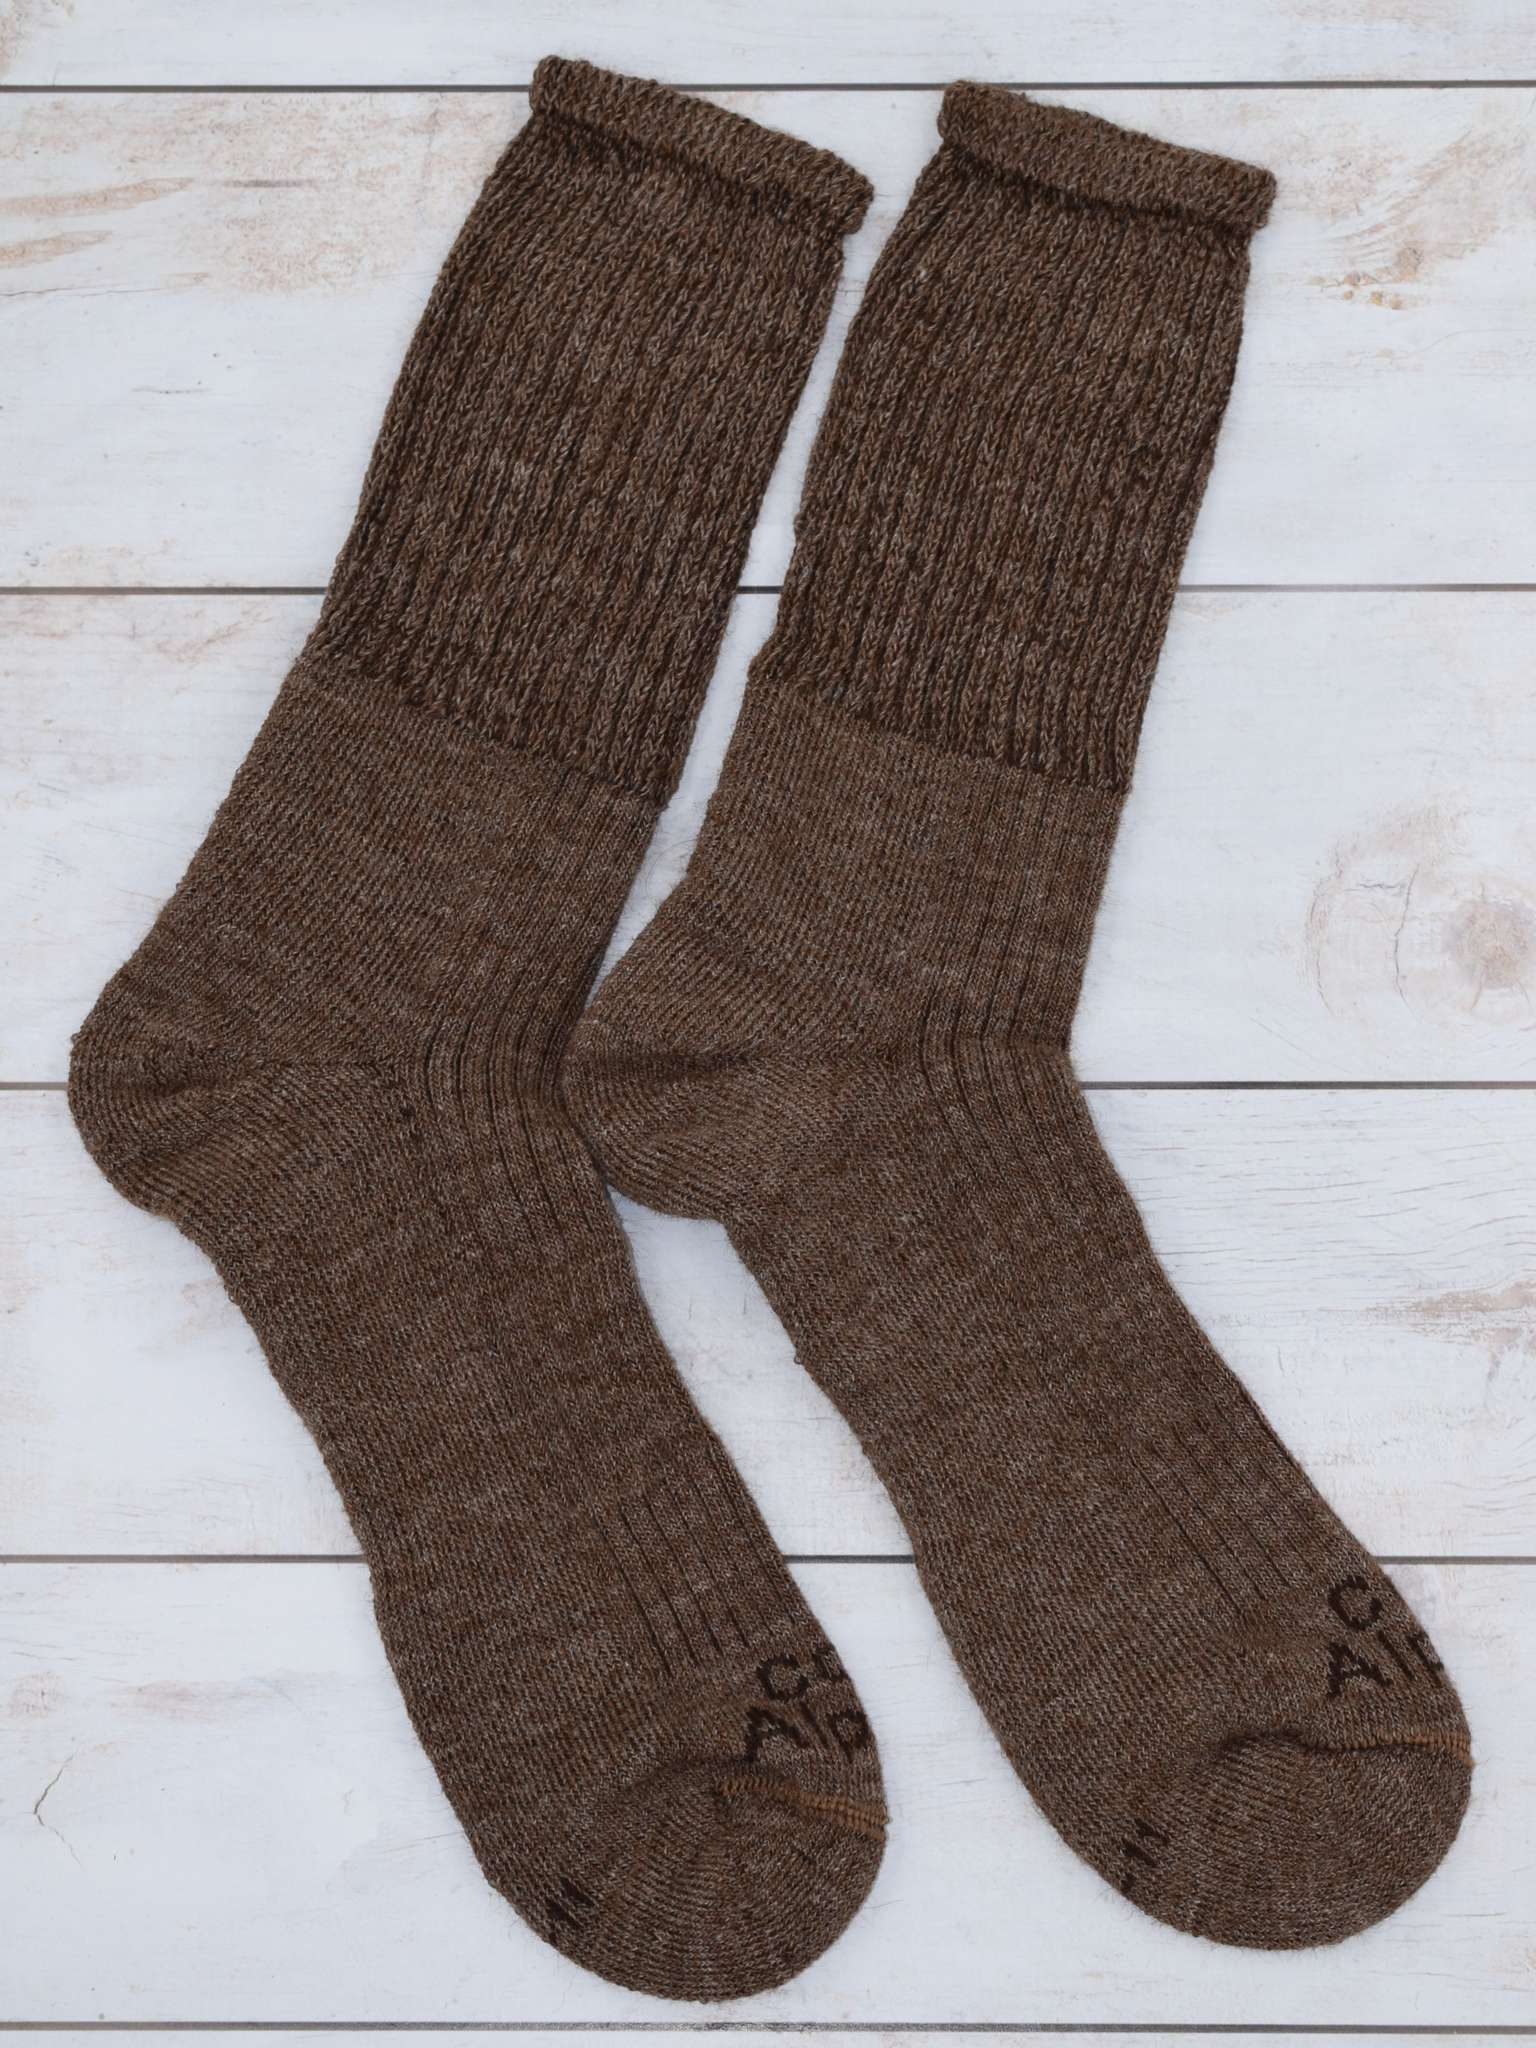 Light Hiker Socks made from Alpaca Fibre